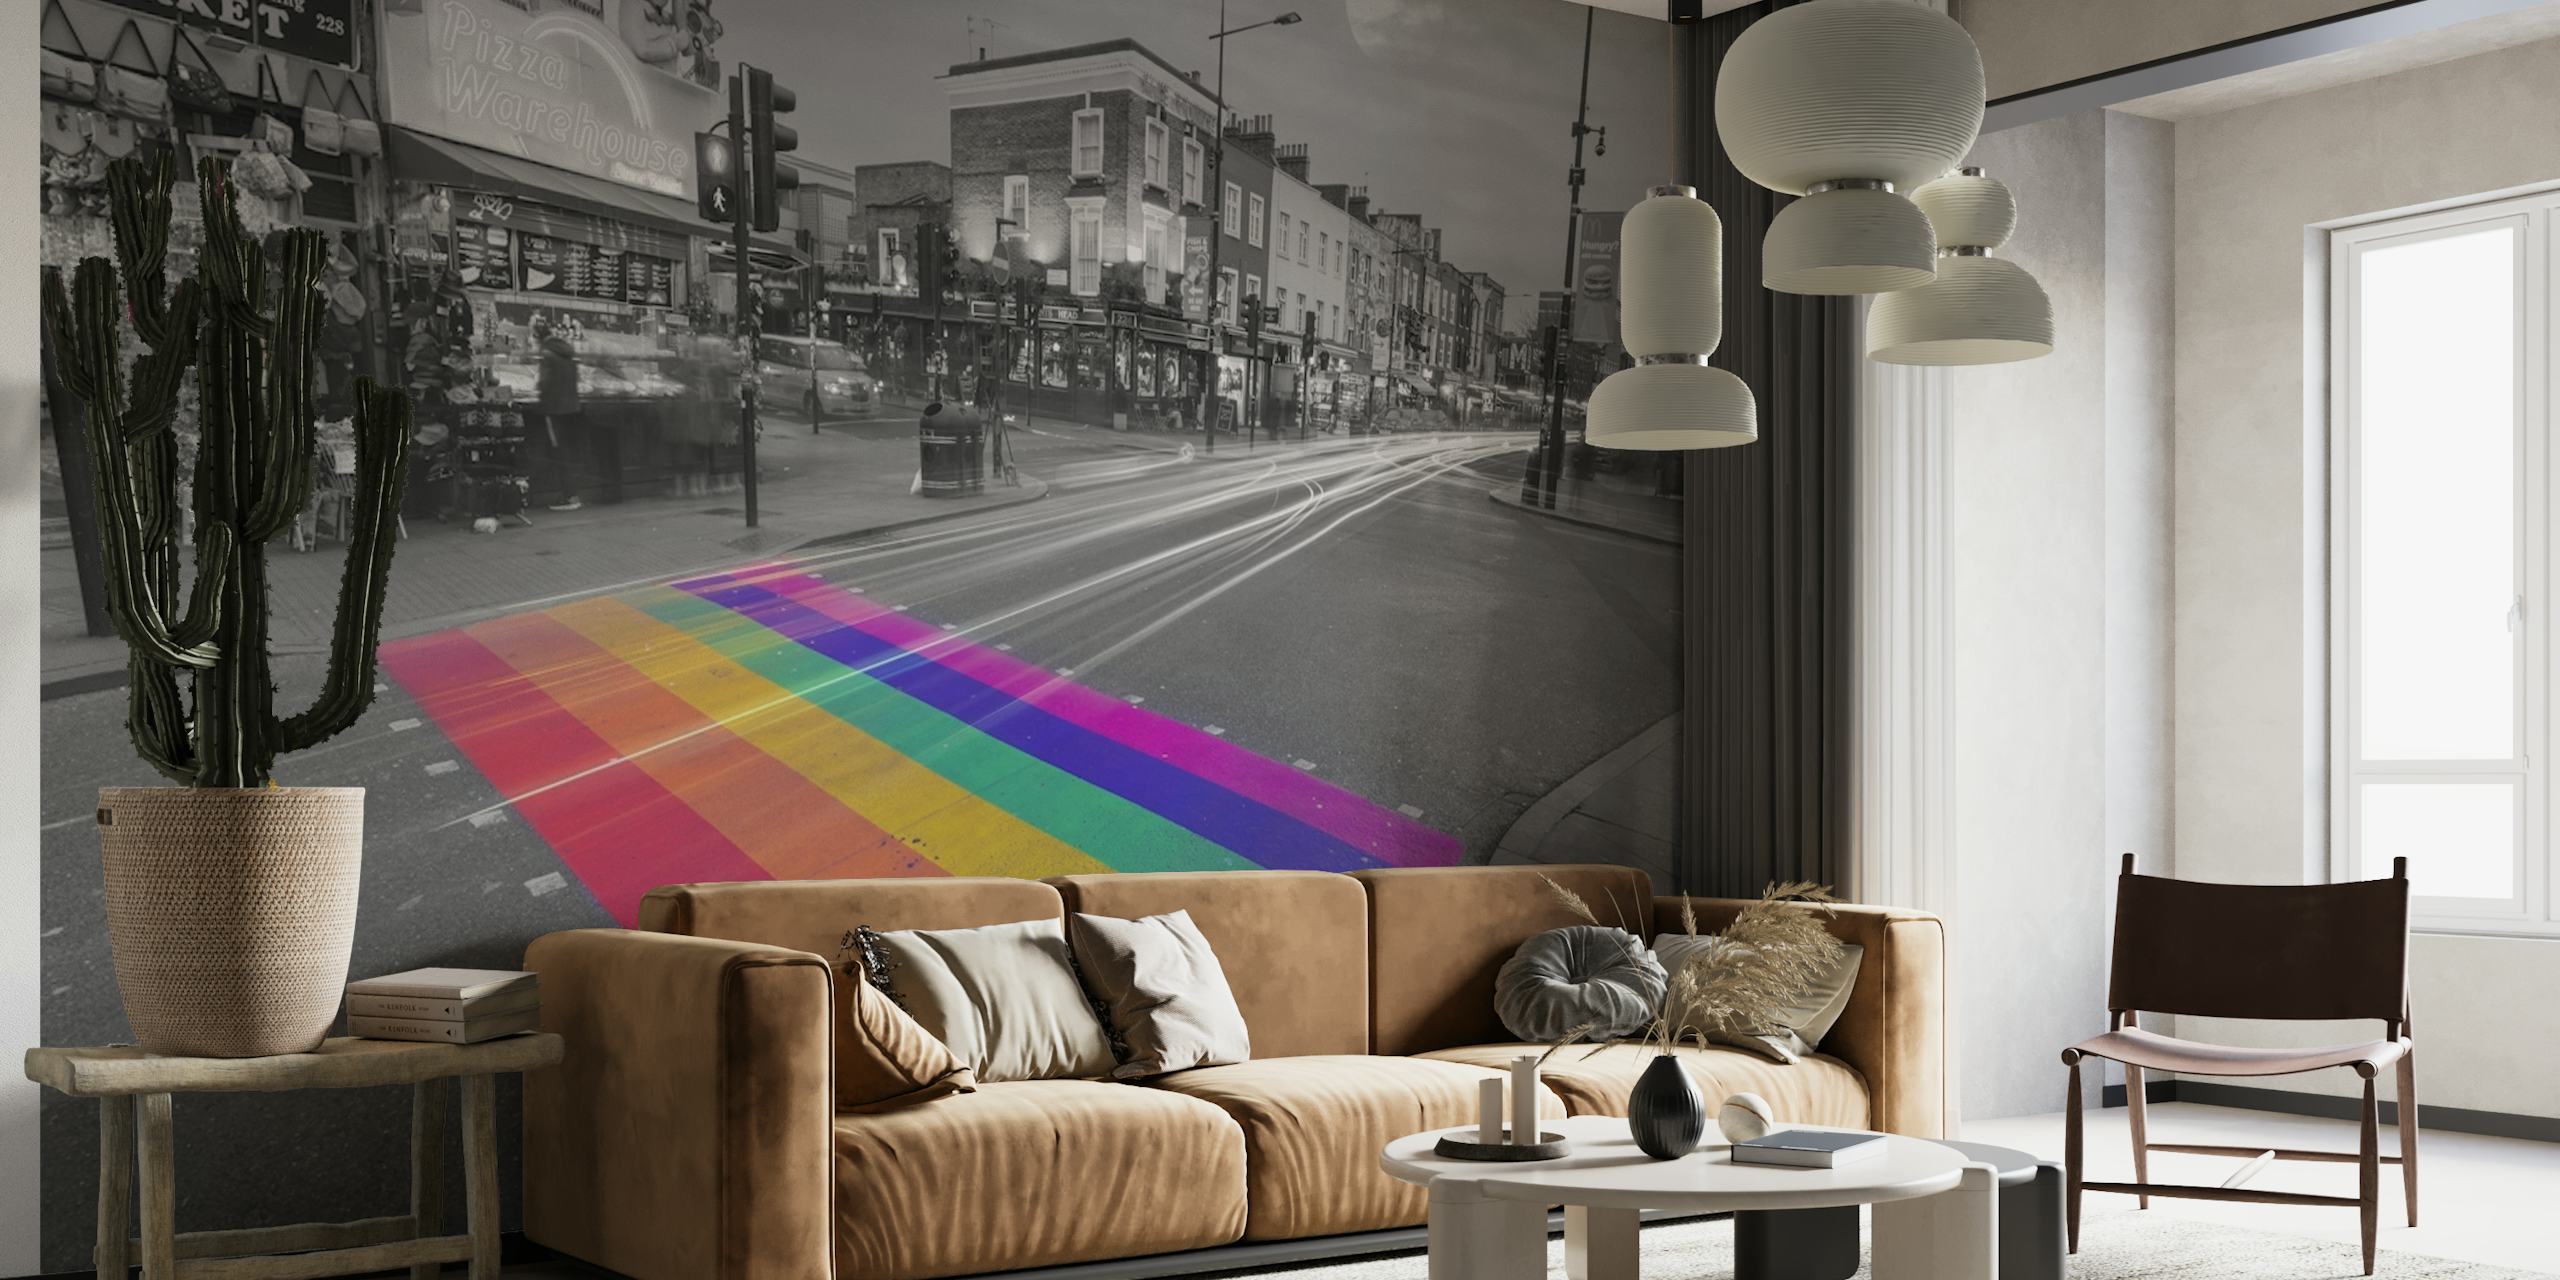 Farverigt fodgængerfelt fototapet i et monokromt bybillede